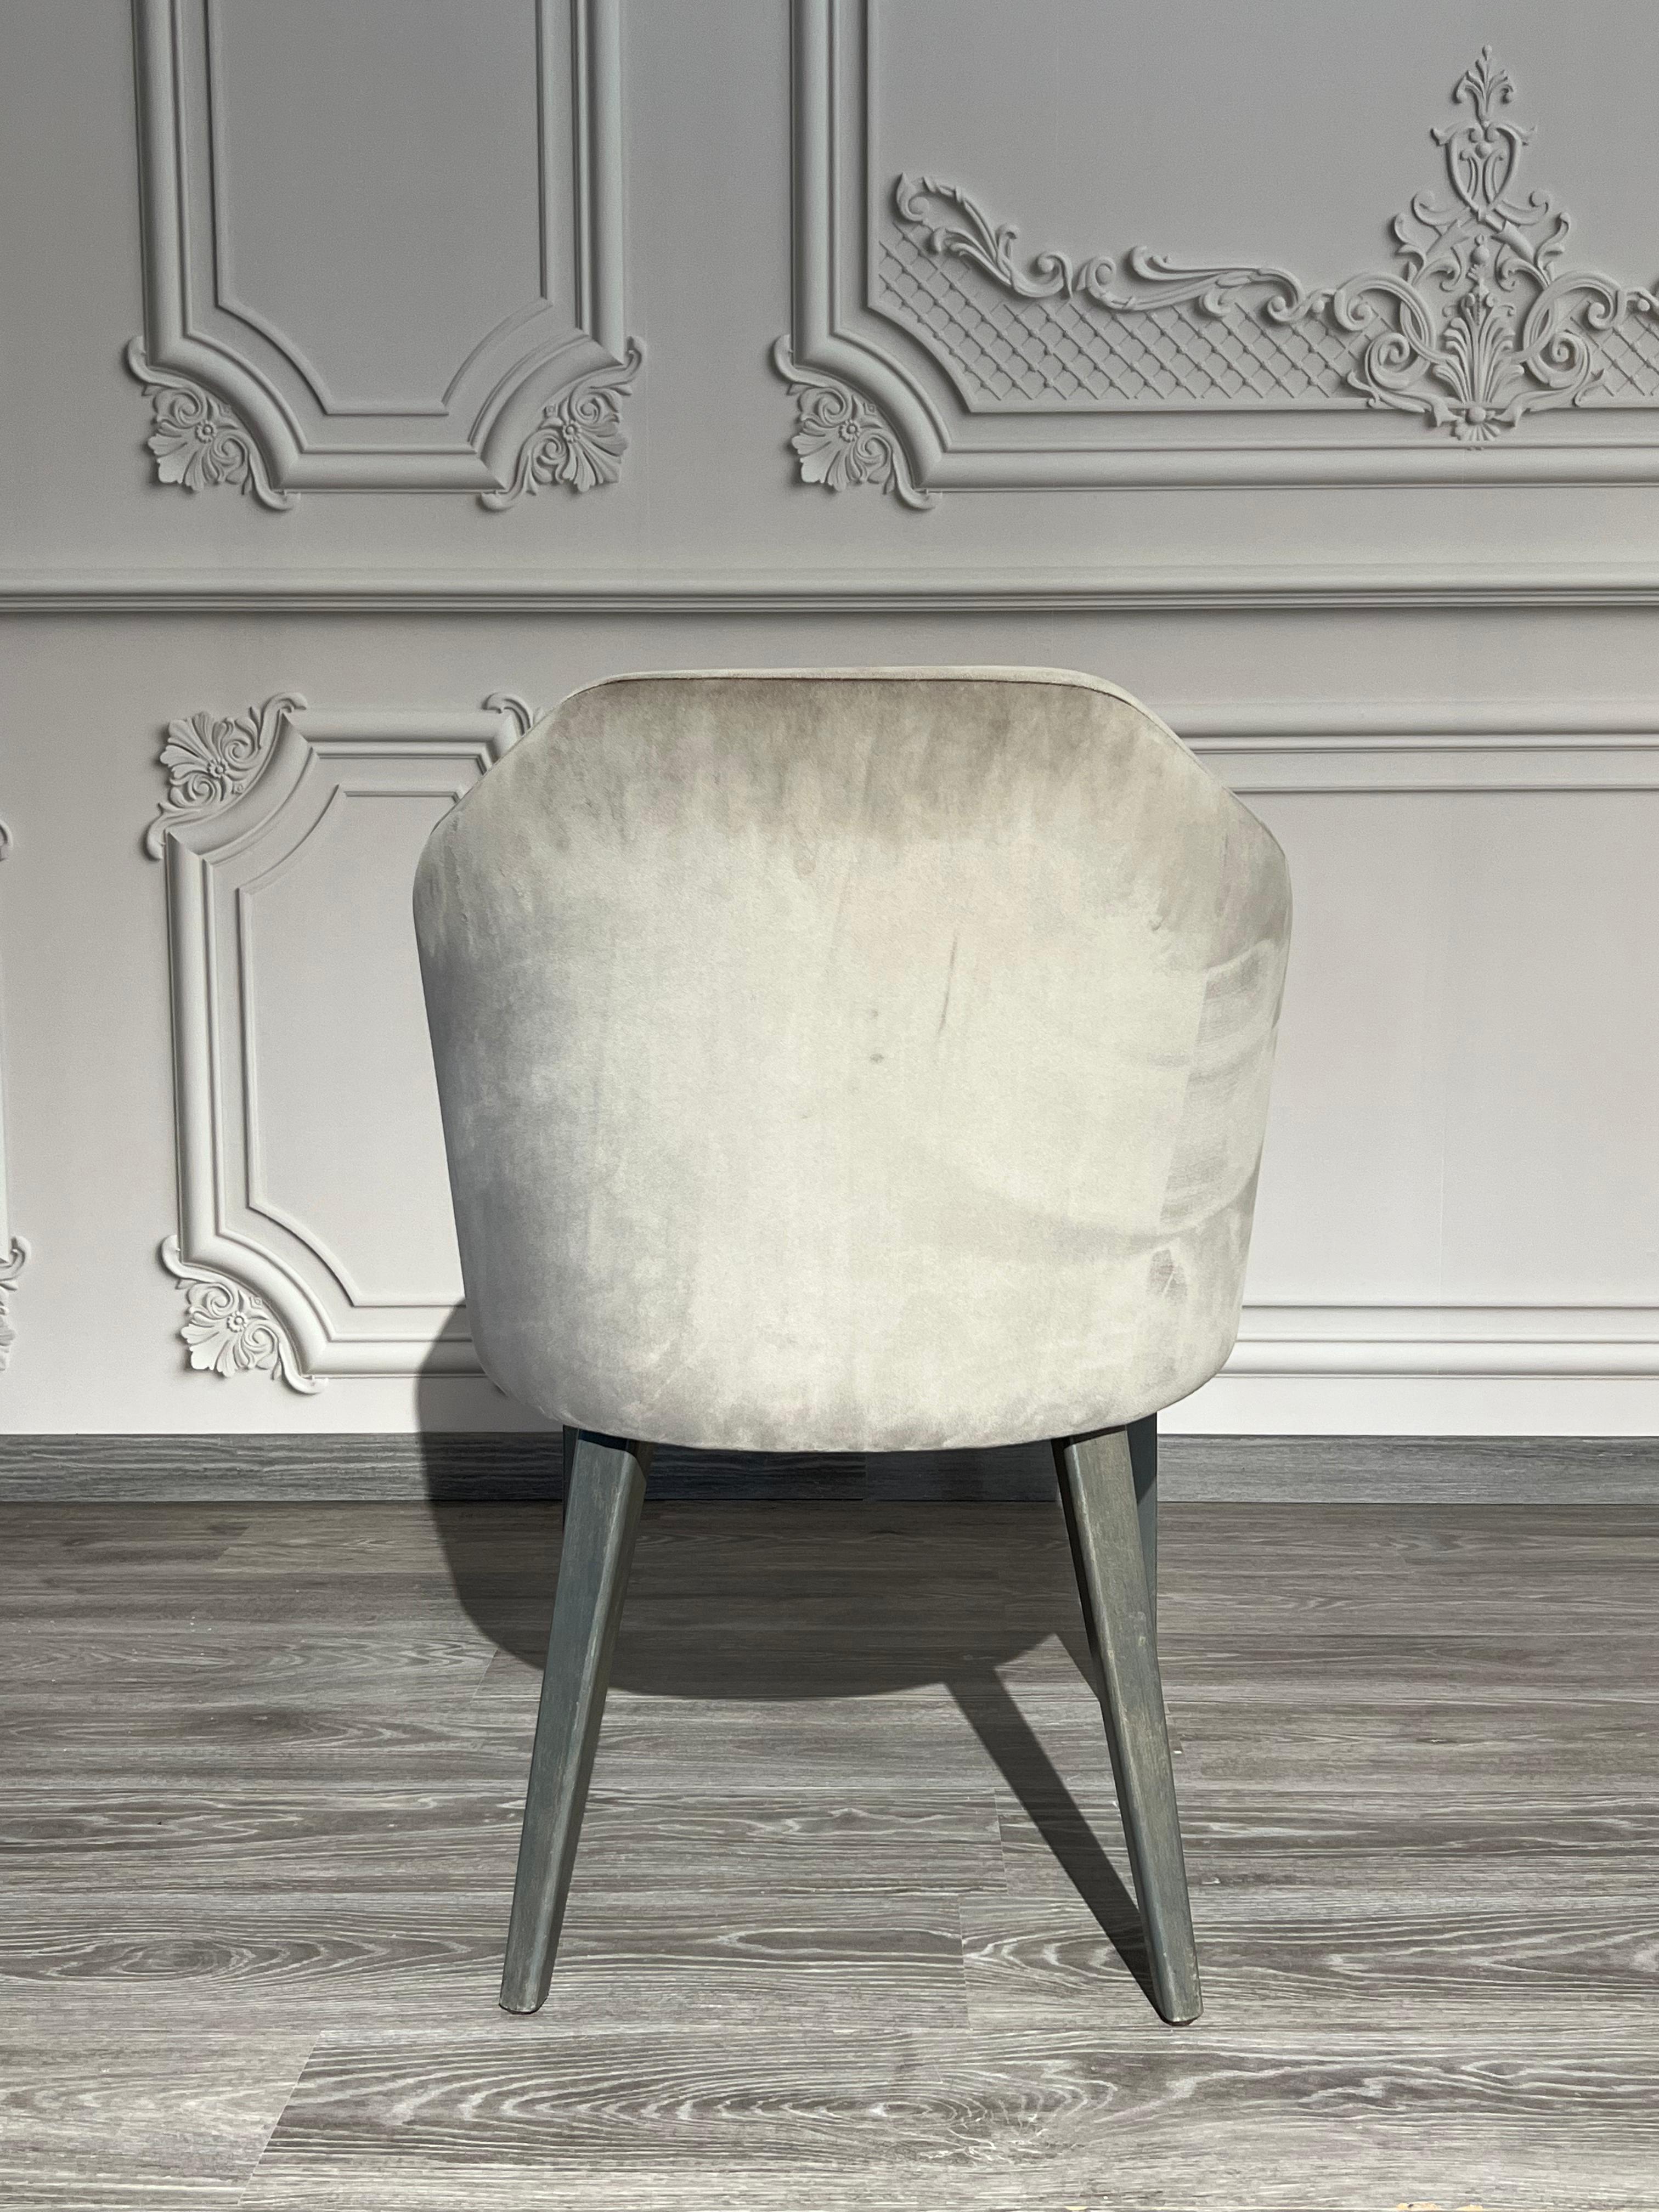 Sessel mit gepolstertem Rücken und Armlehnen. Hoher Komfort und Design. Harvey Esszimmerstuhl erhältlich in 6 Stück grauem Samt.

Individuell gestaltbar mit Leder-, Stoff- oder Samtbezügen Ihrer Wahl.
